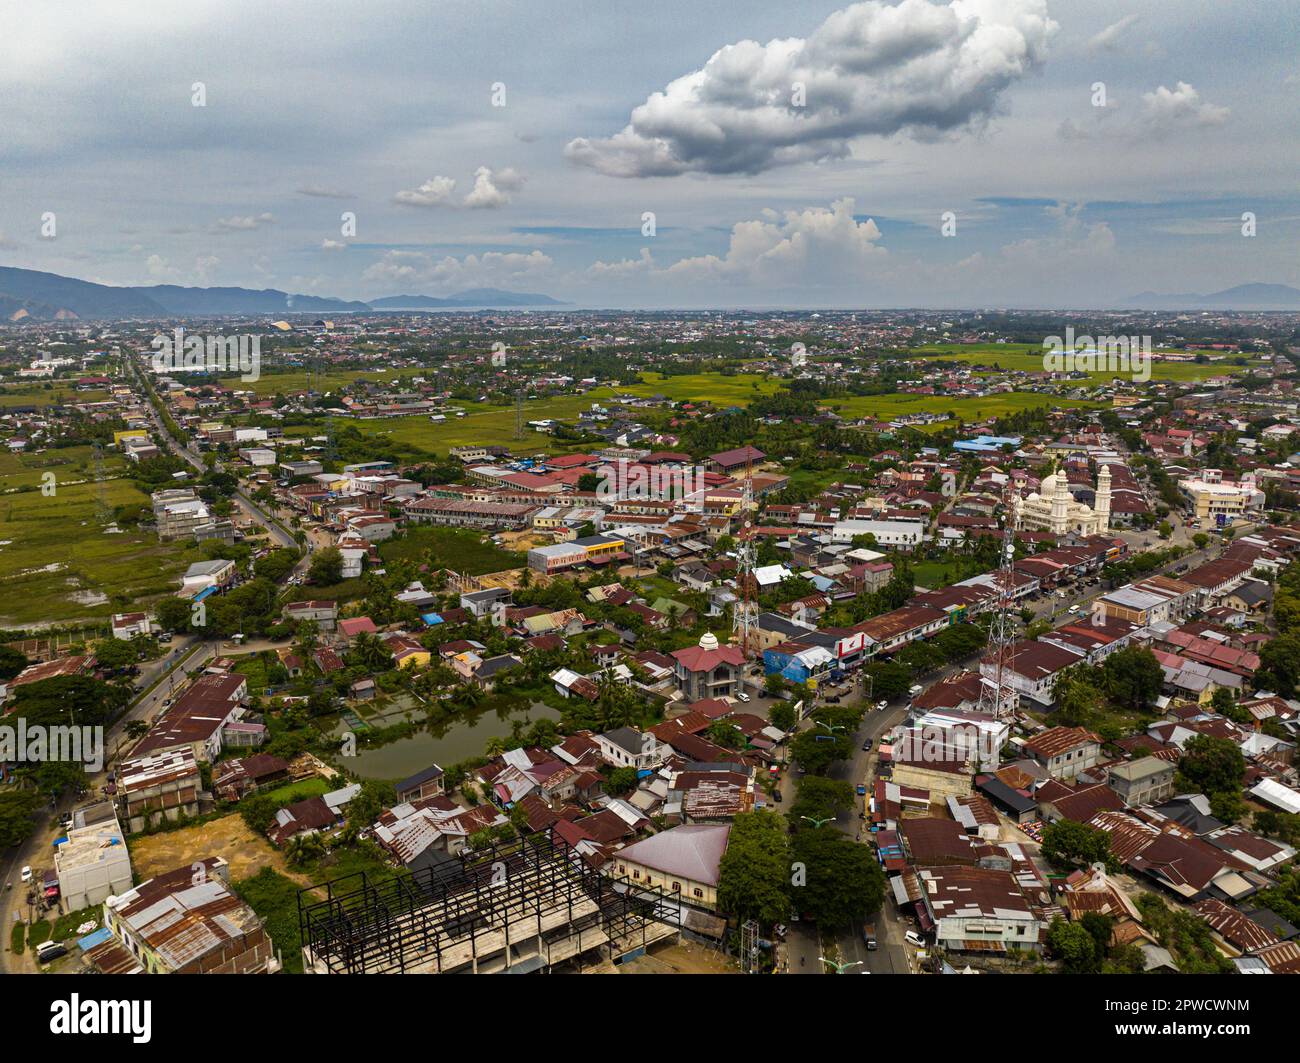 Vue aérienne de la ville de Banda Aceh avec les quartiers résidentiels et les maisons. Sumatra, Indonésie. Banque D'Images